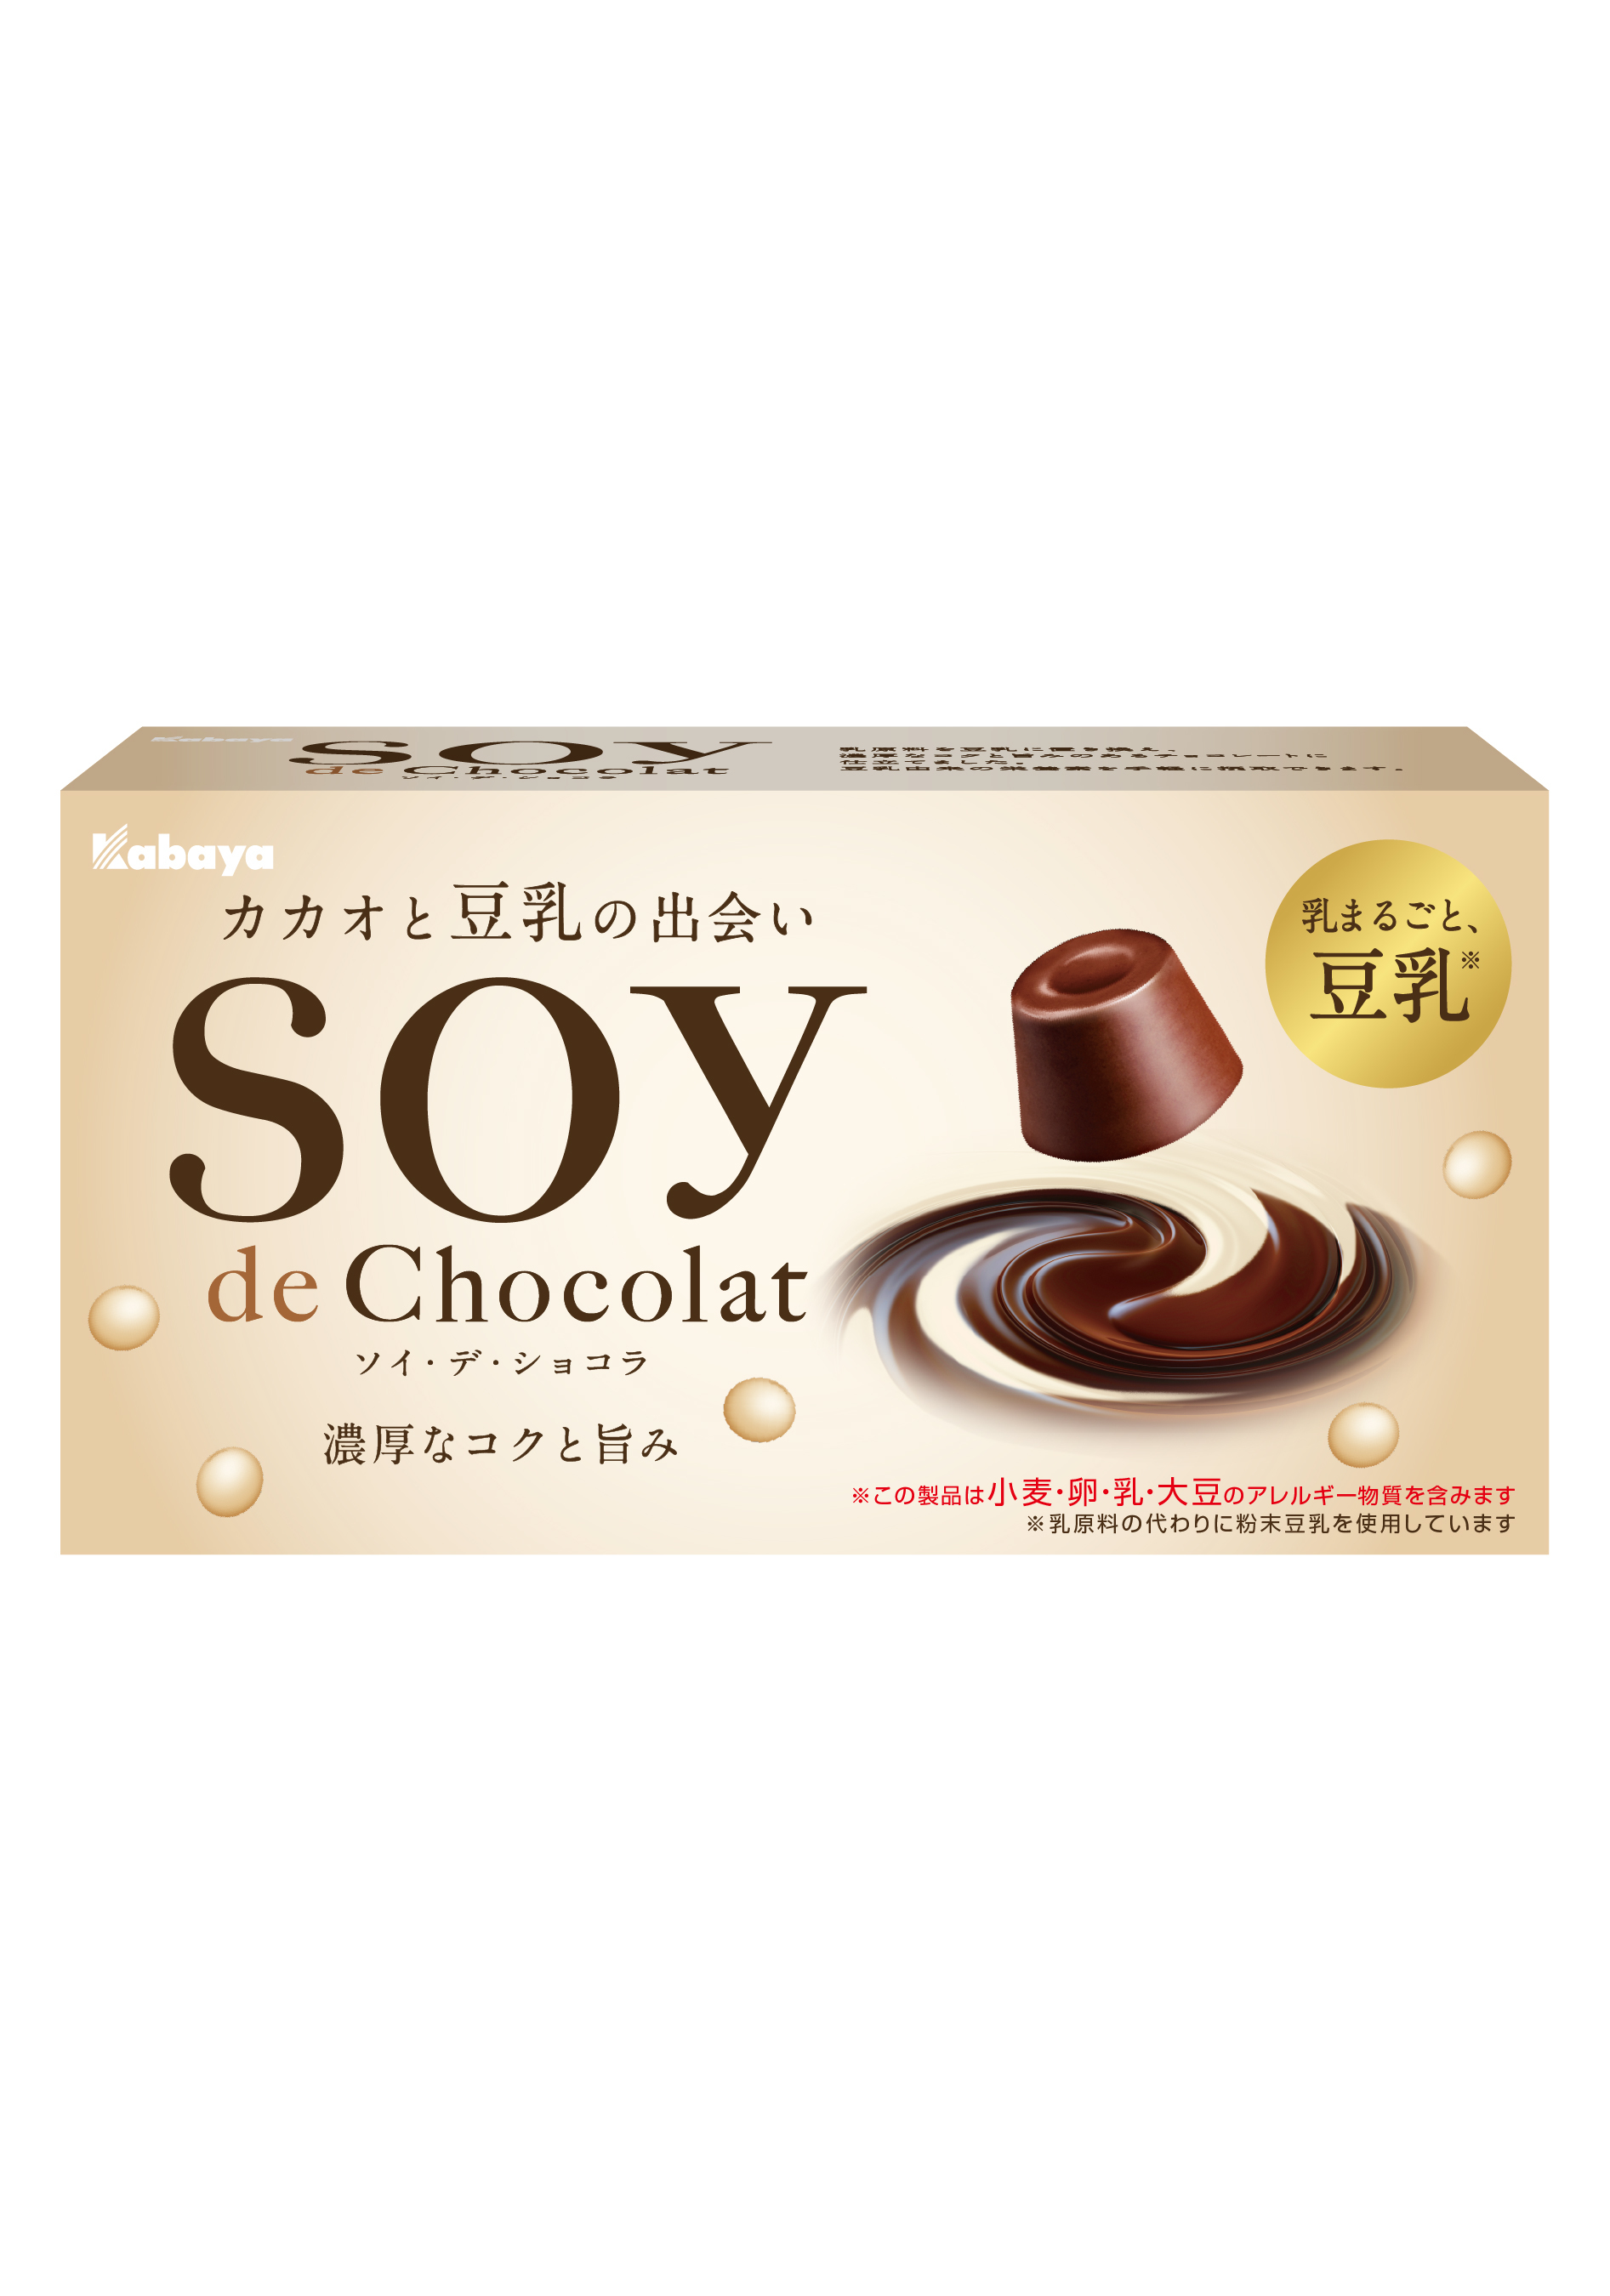 カバヤ食品が新商品発表会を開催　
新商品「SOY de Chocolat(ソイ・デ・ショコラ)」を
9月27日に全国発売　
～カカオ×豆乳で「美味しさと健康の両立」に挑戦～